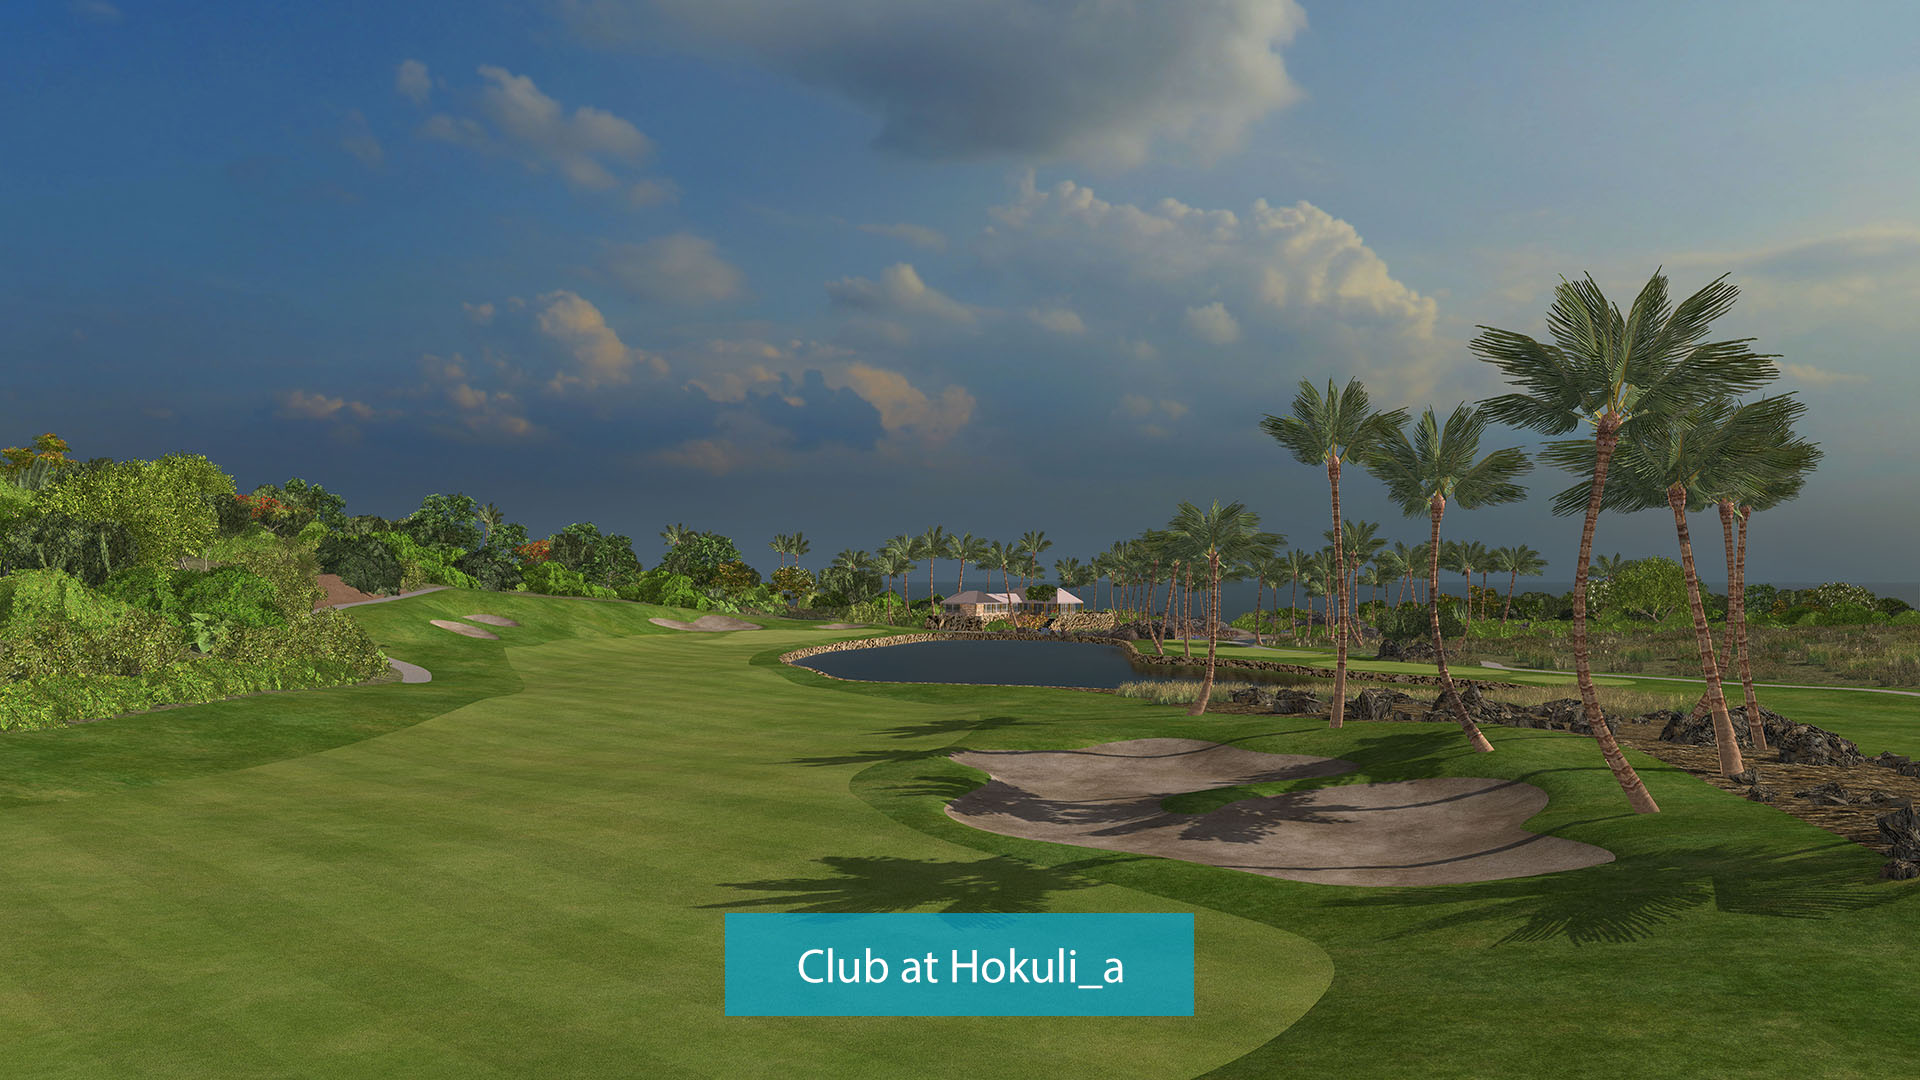 Club at Hokuli_a copy